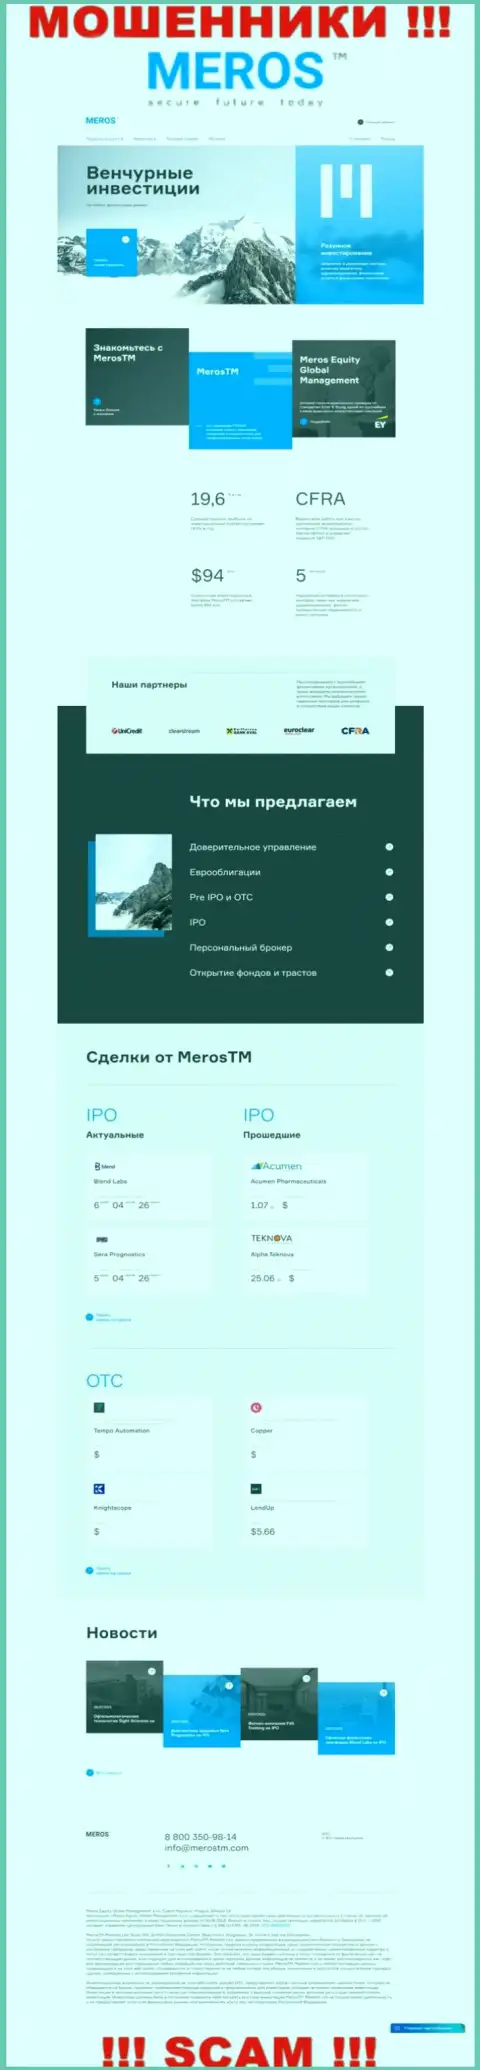 Обзор веб-портала мошенников MerosTM